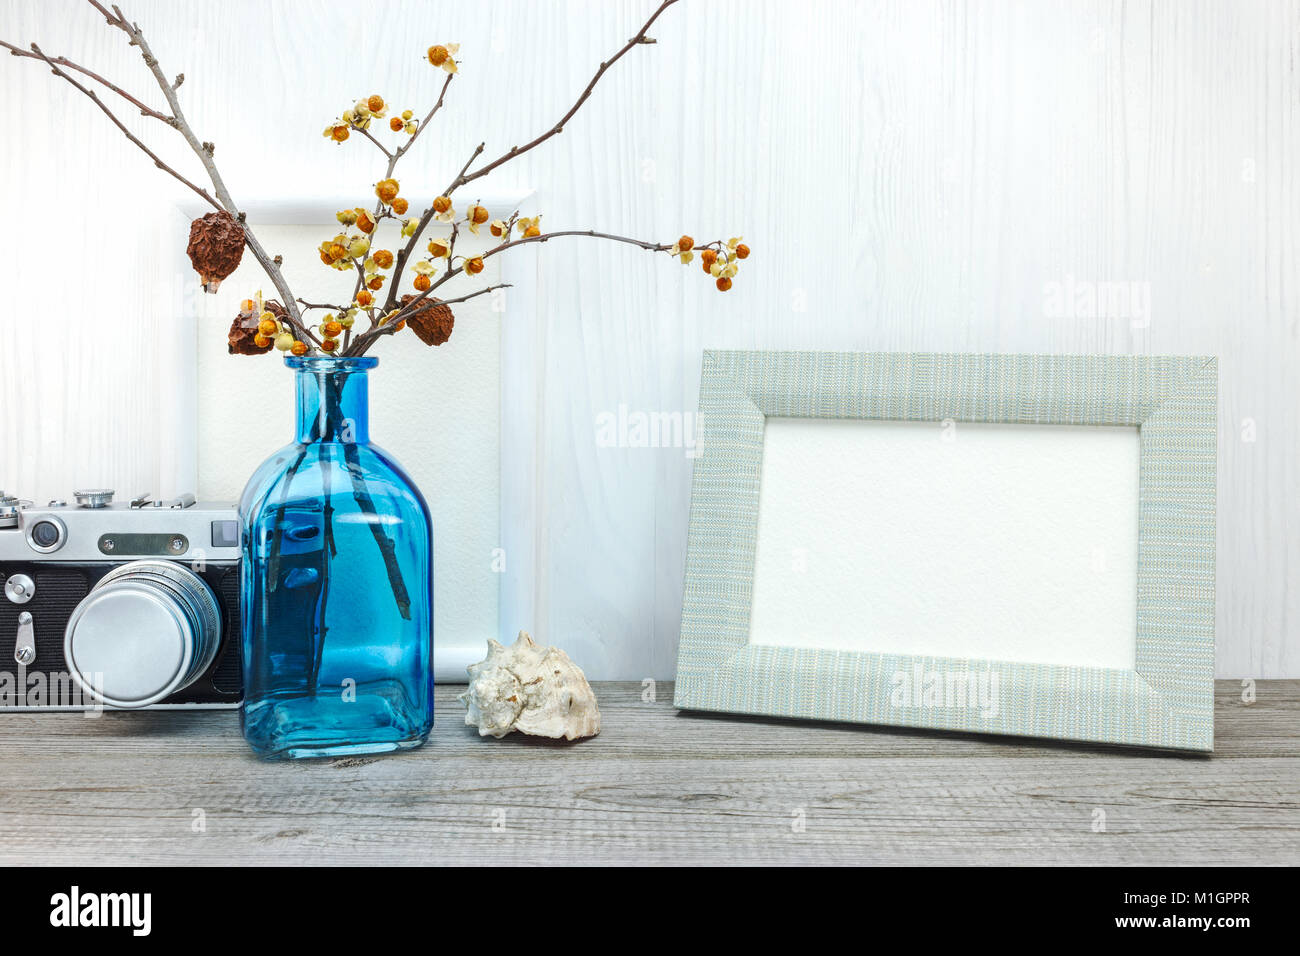 Appareil photo rétro vide, cadre photo, vase avec fleurs séchées sur table en bois Banque D'Images